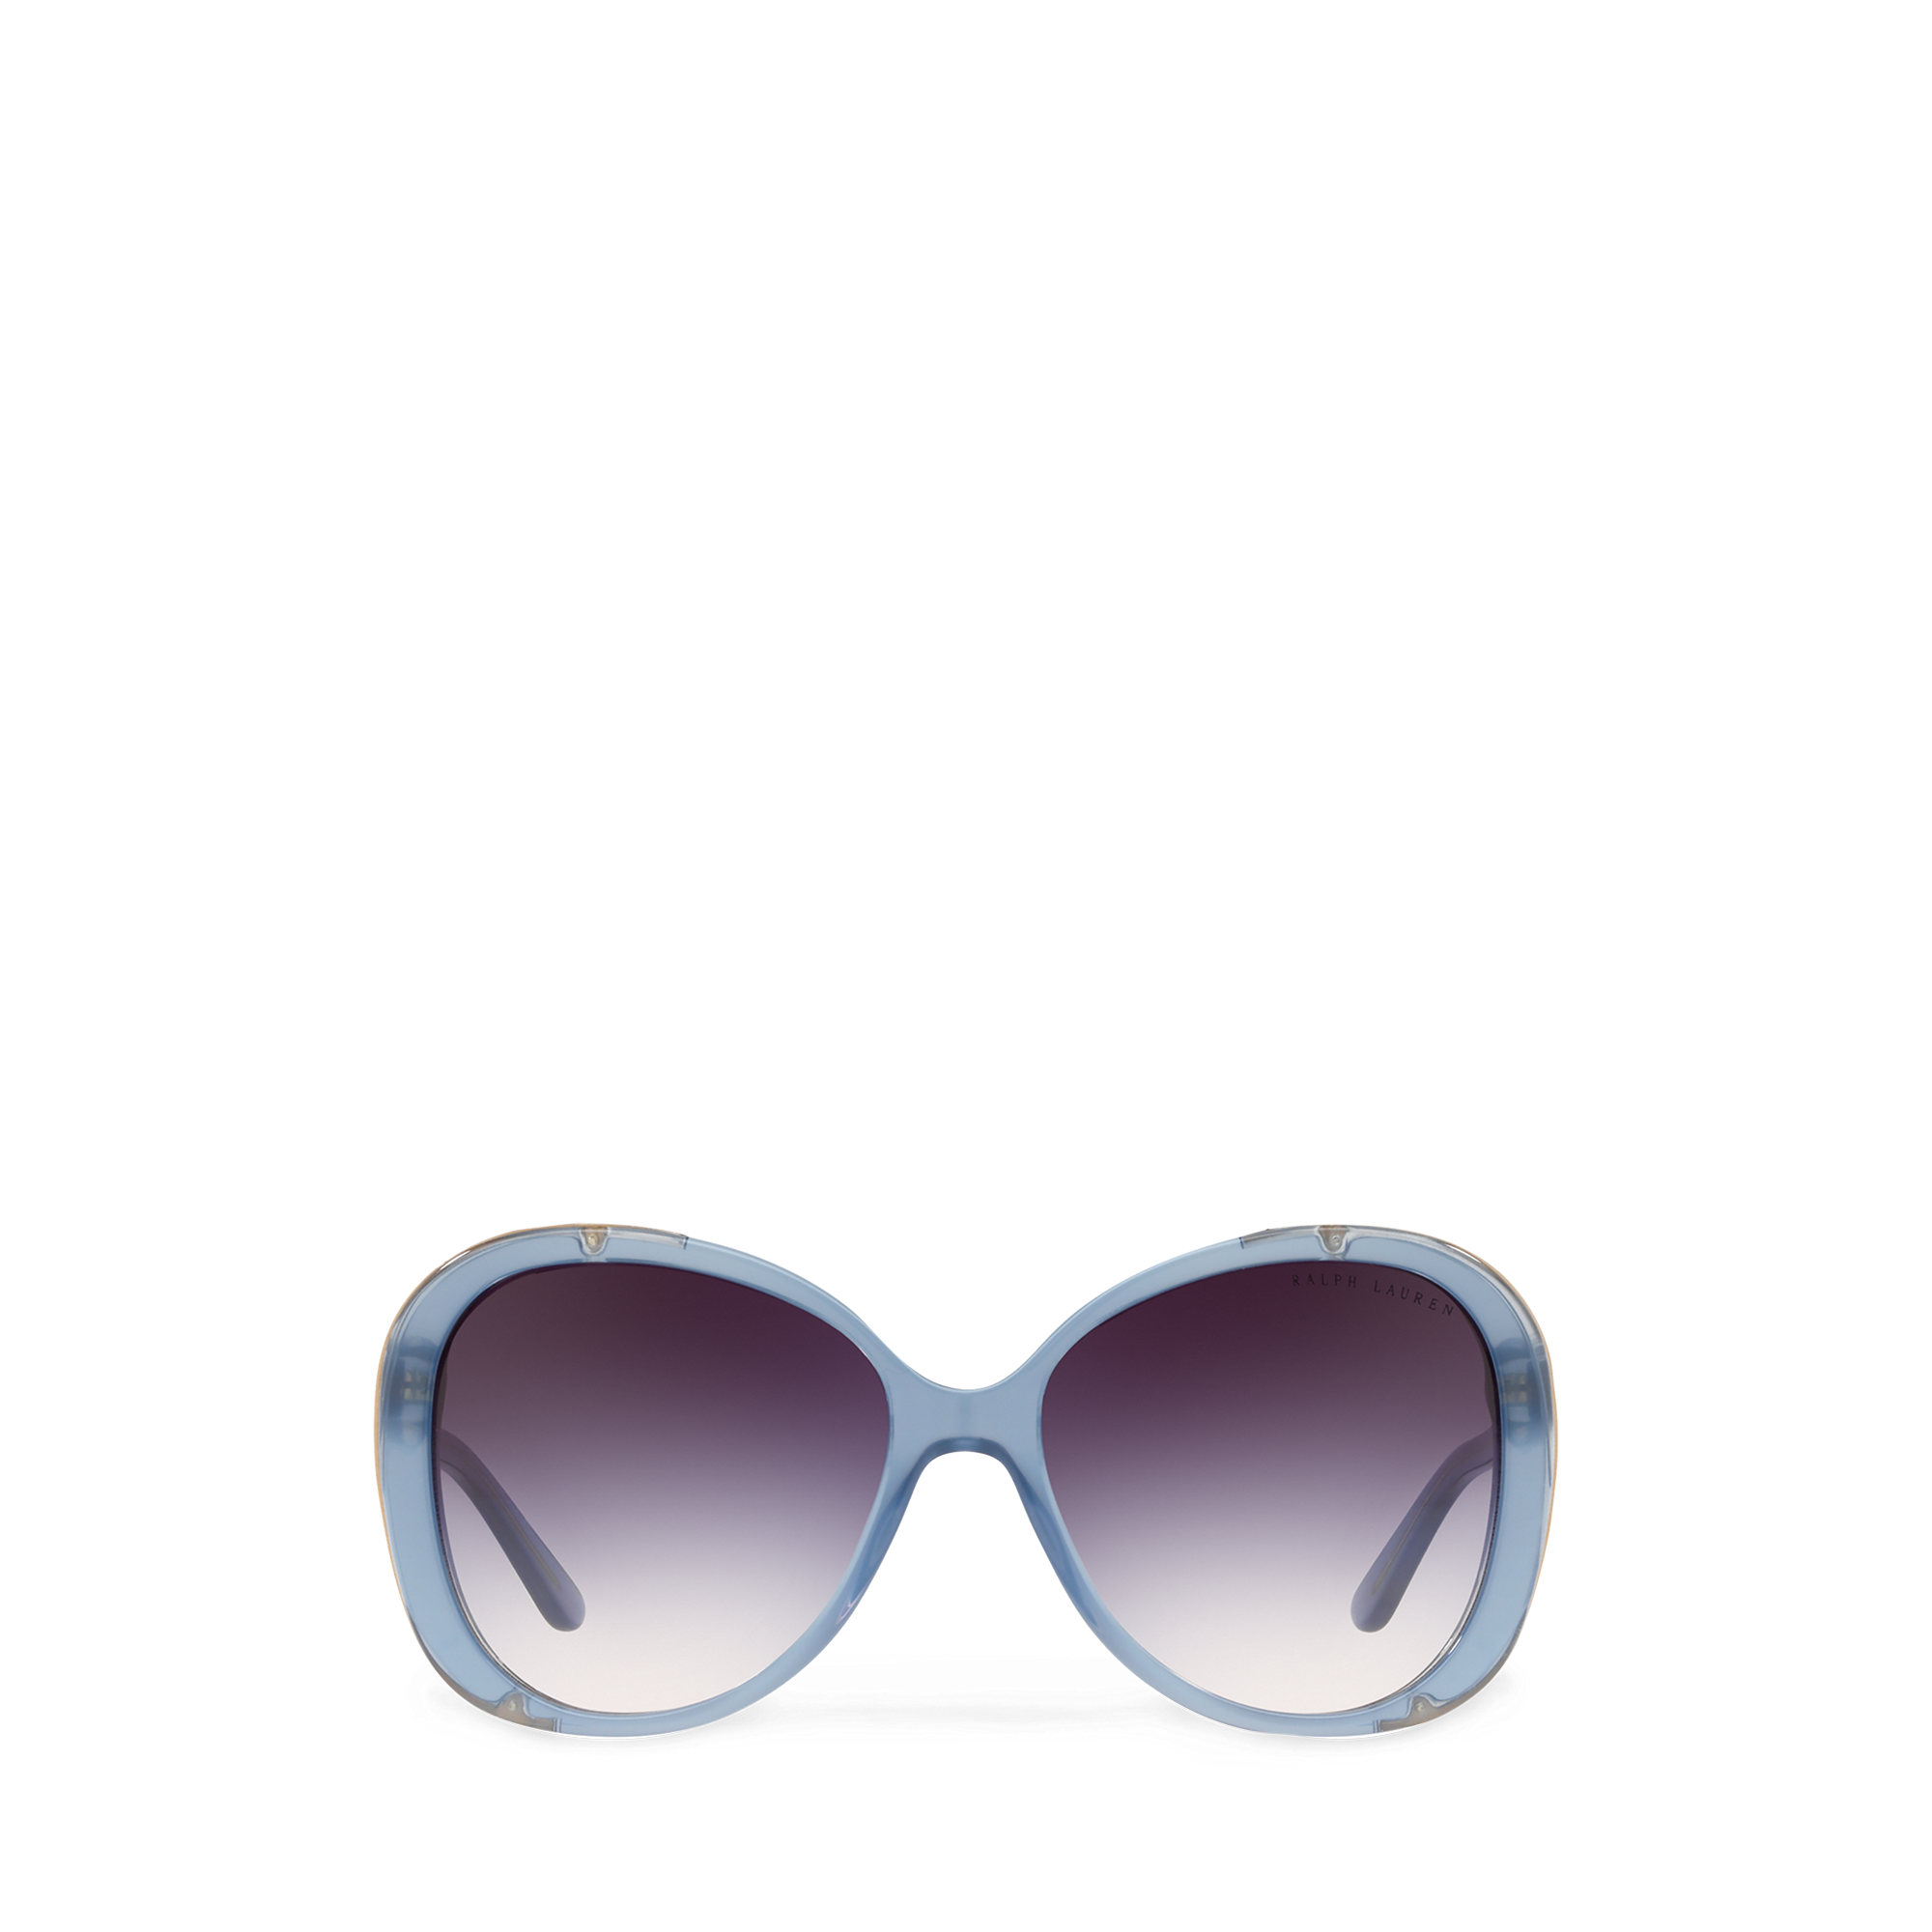 Ralph Lauren Butterfly Sunglasses. 1